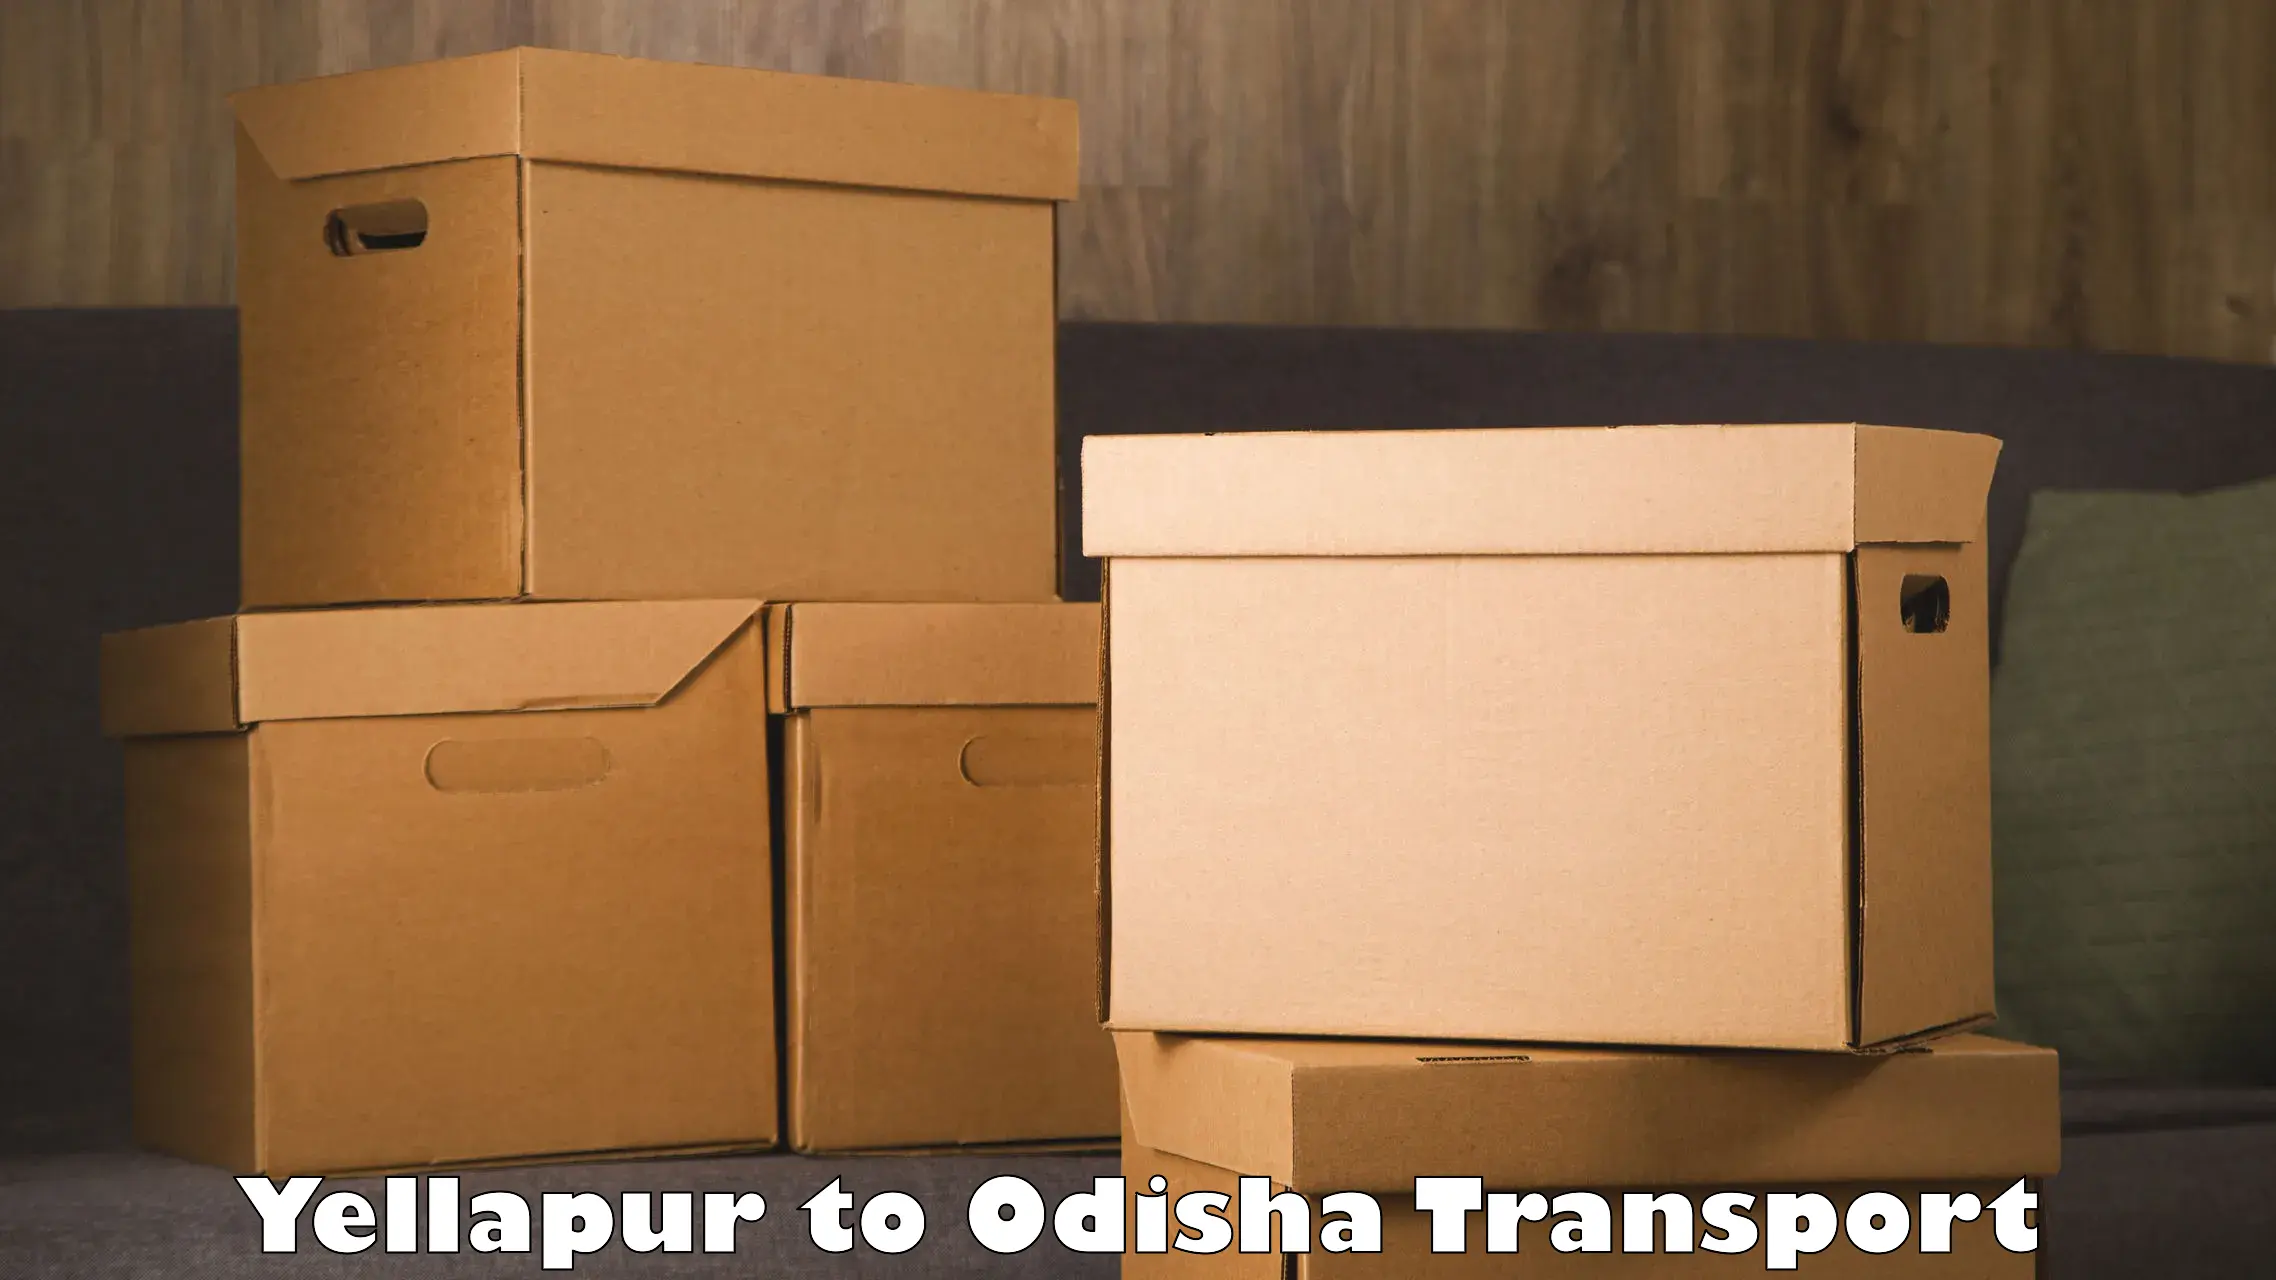 Container transport service Yellapur to Dukura